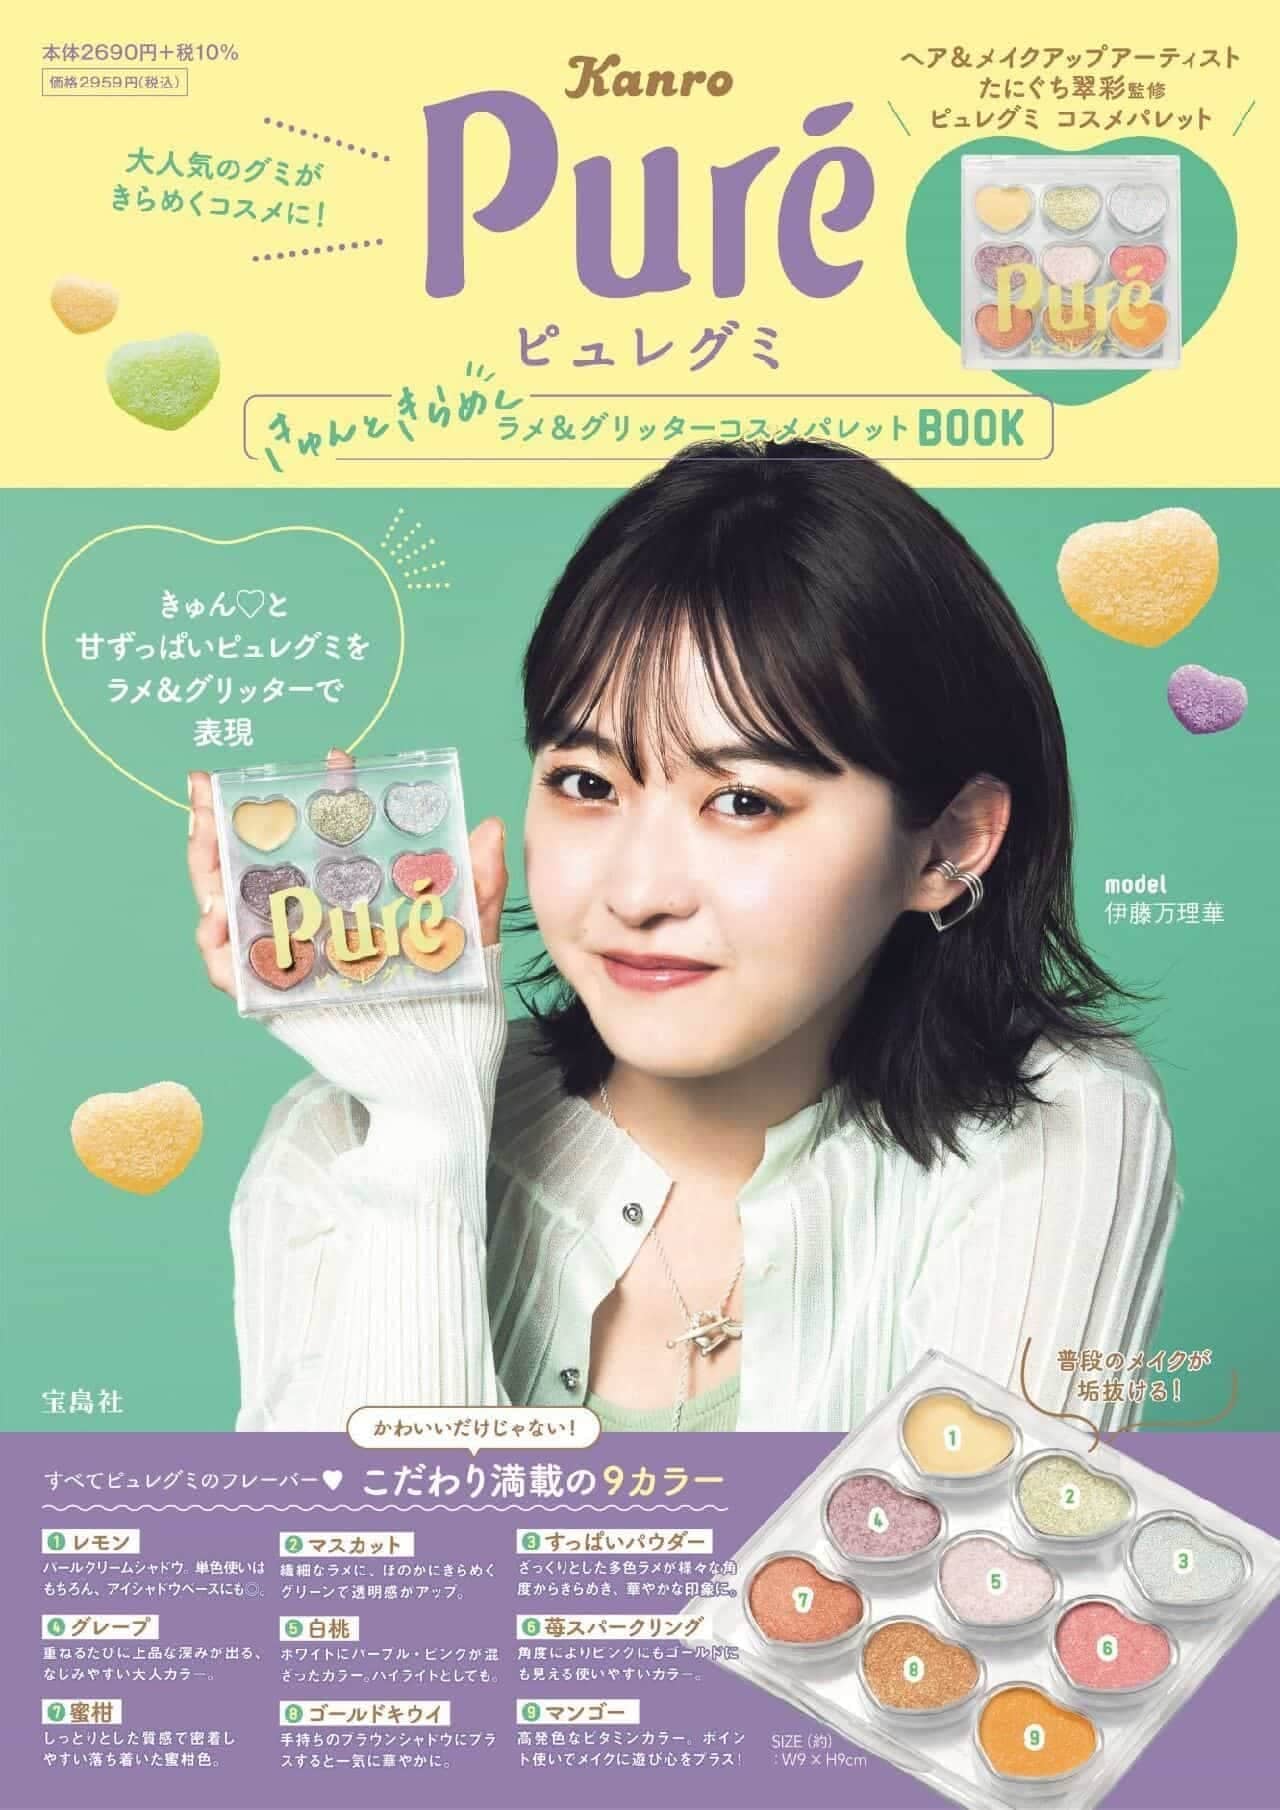 Purée Gummi Twinkle Twinkle Lame & Glitter Cosmetics Palette Book" by Takarajimasya, Inc.